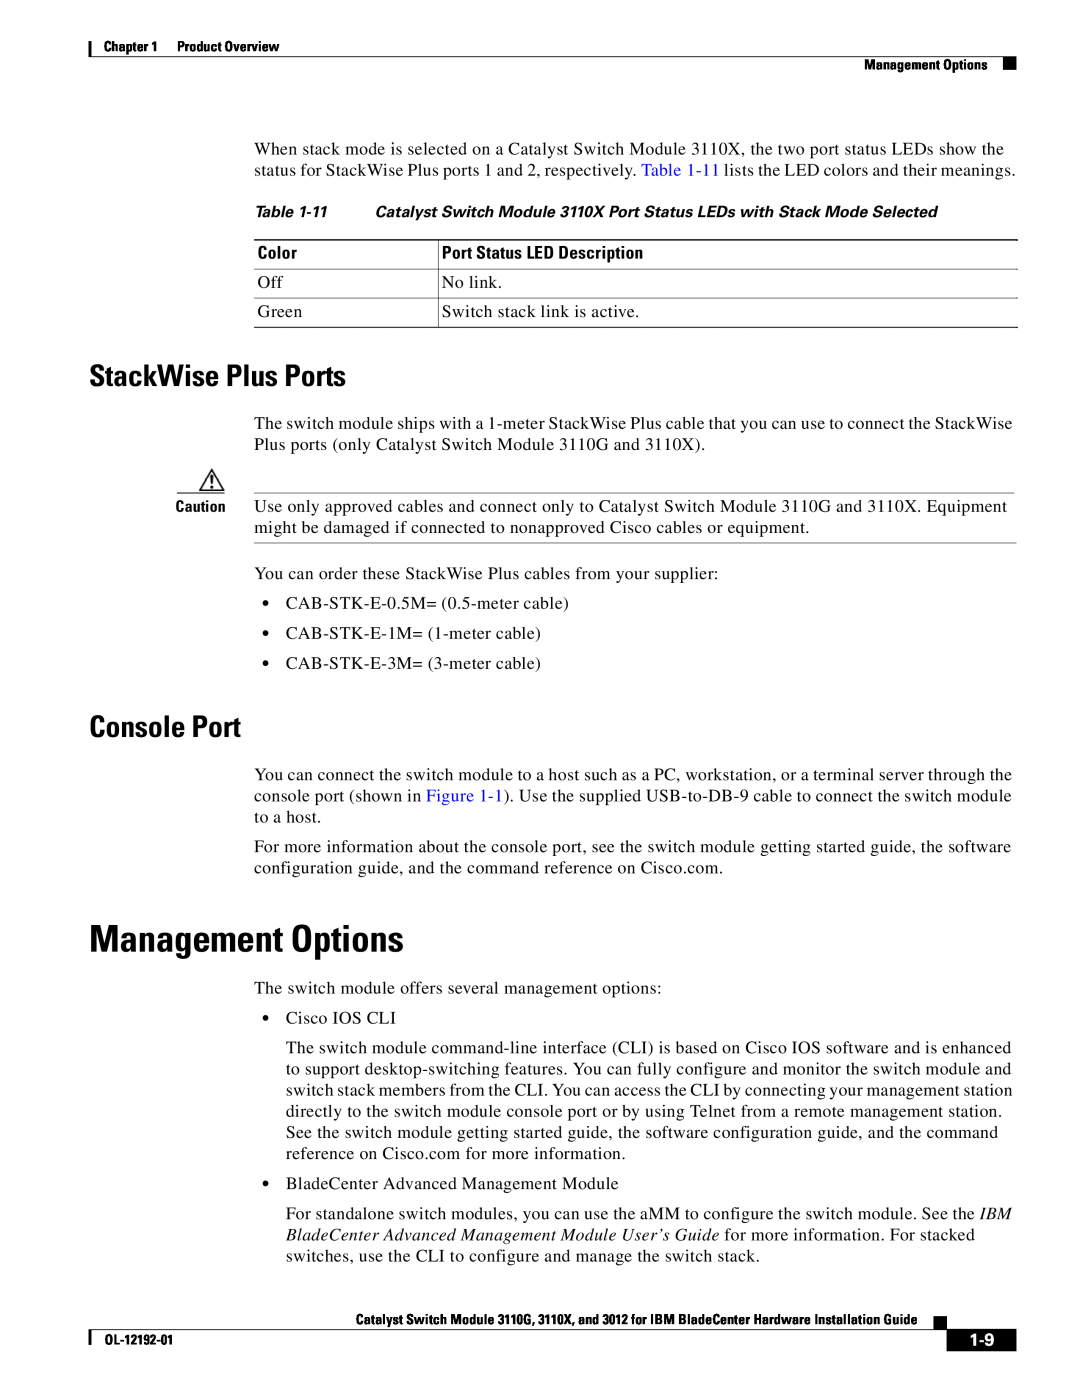 Cisco Systems 3110X, 3110G, 3012 Management Options, StackWise Plus Ports, Console Port, Port Status LED Description, Color 